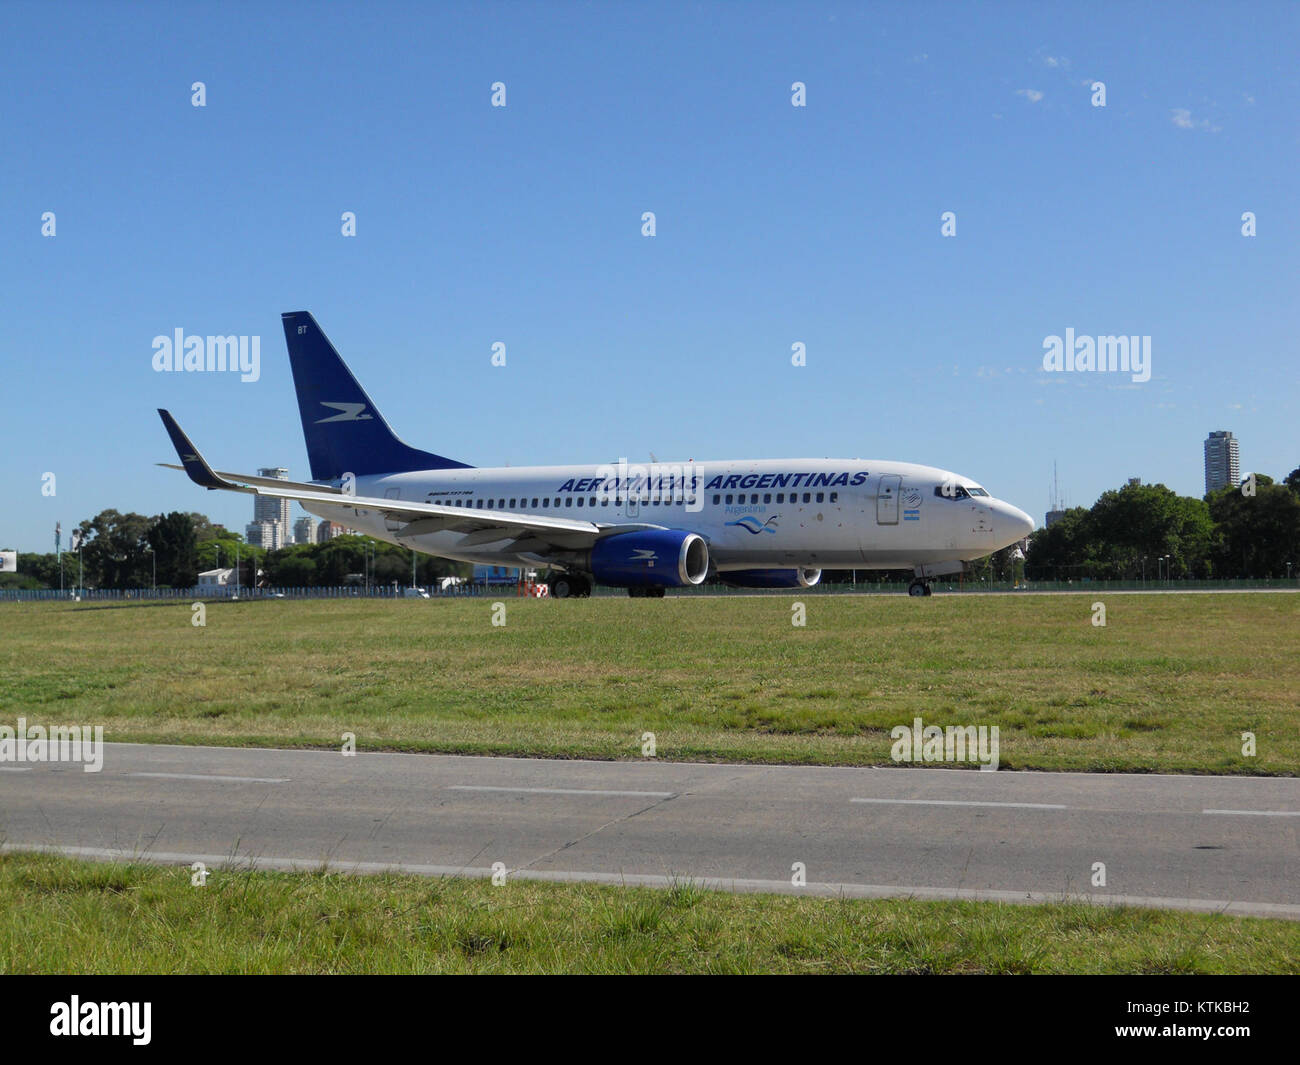 B737 700 Aerolineas Argentinas (23250807693) Stock Photo